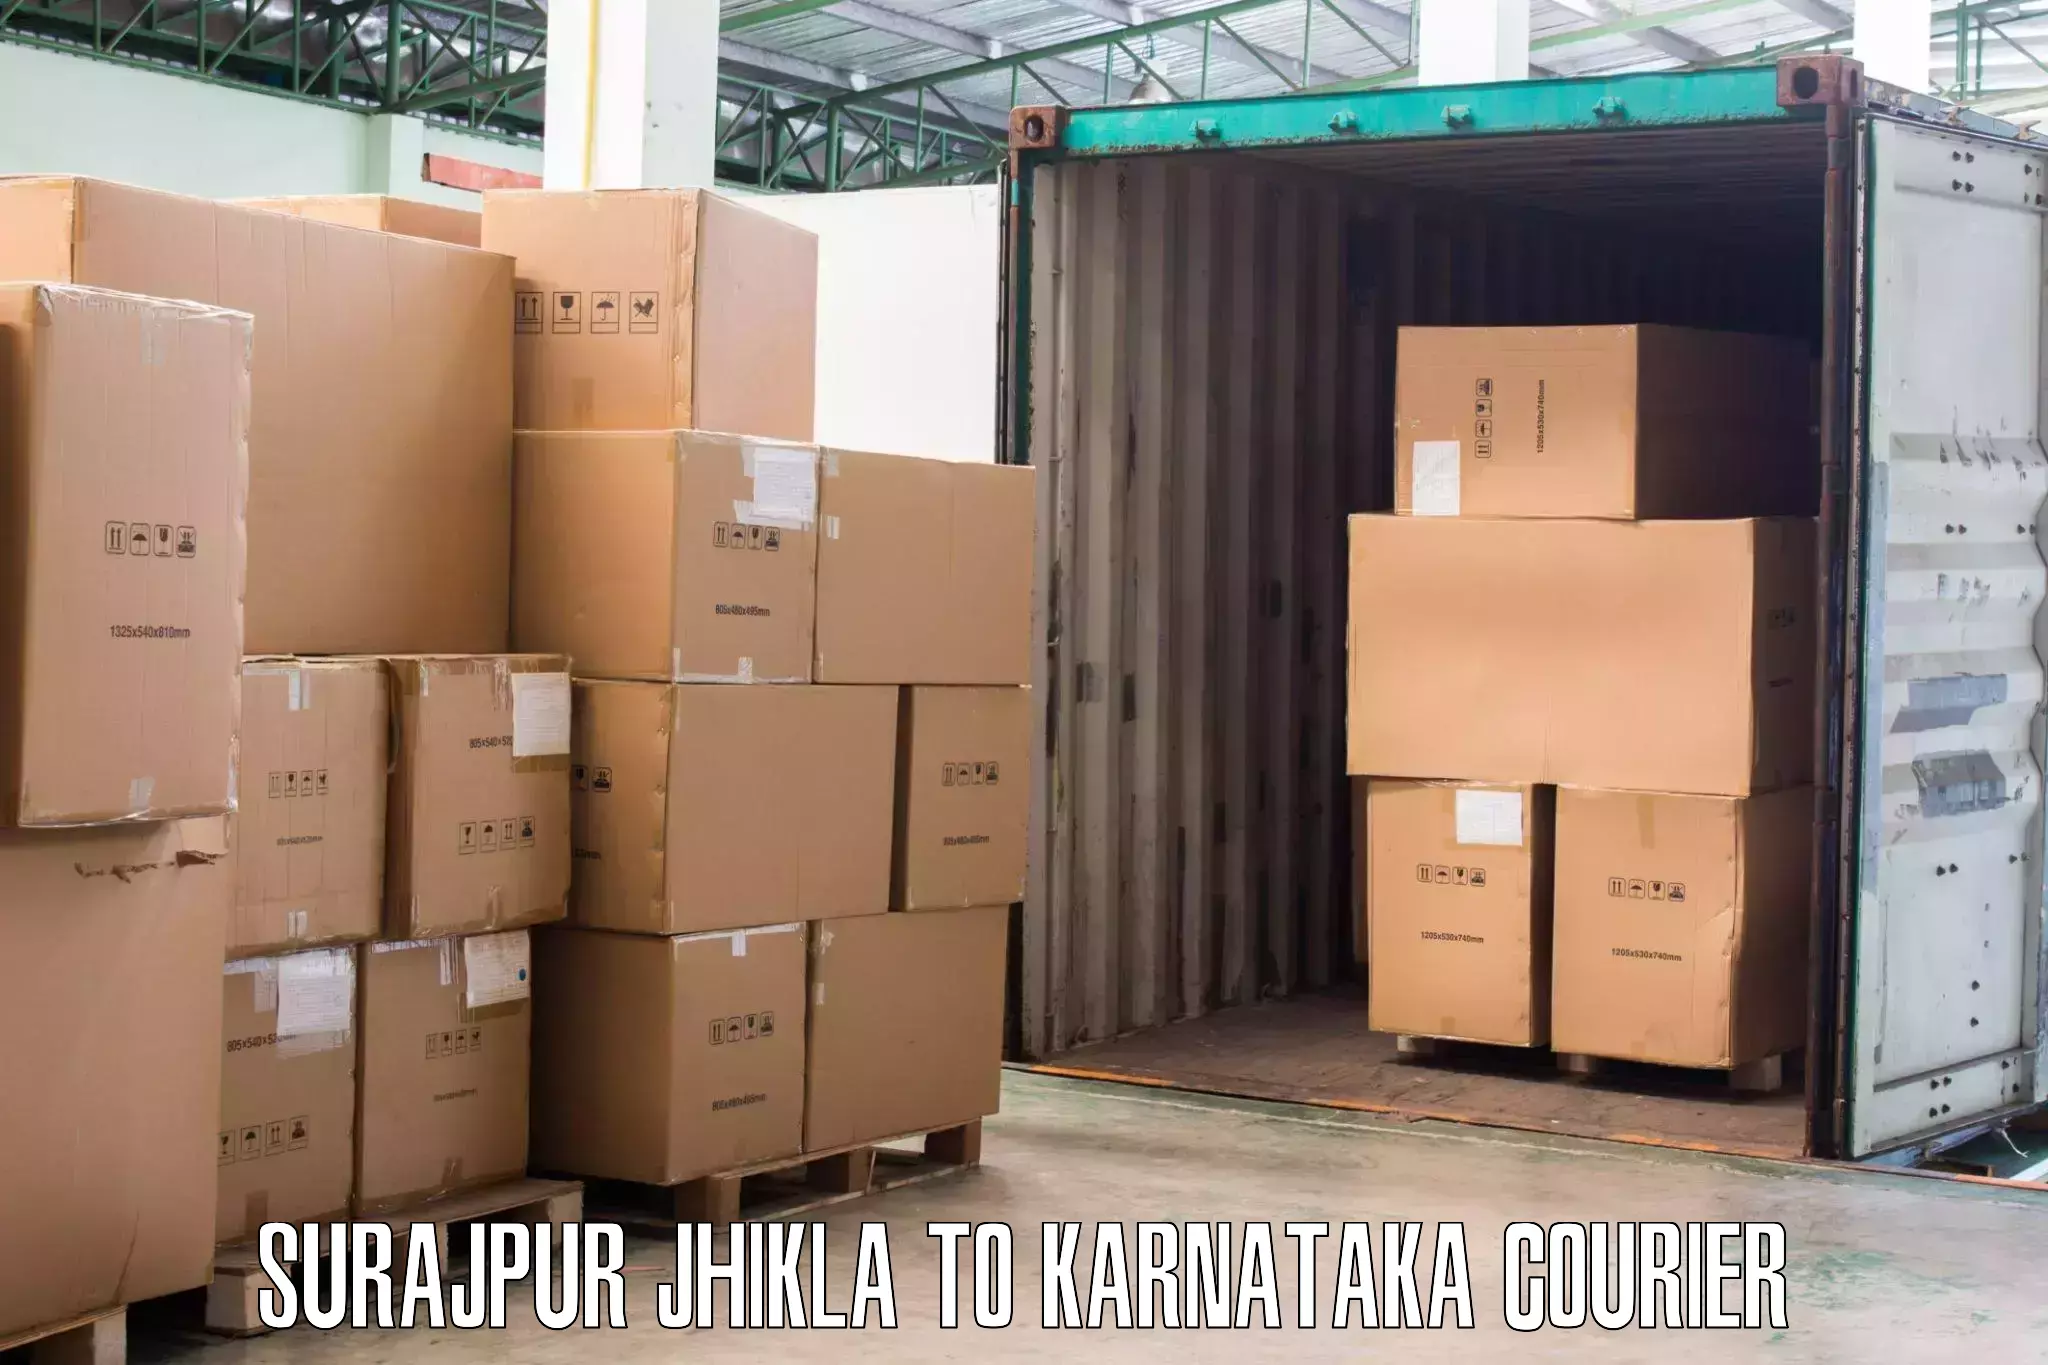 Efficient packing and moving Surajpur Jhikla to Karnataka